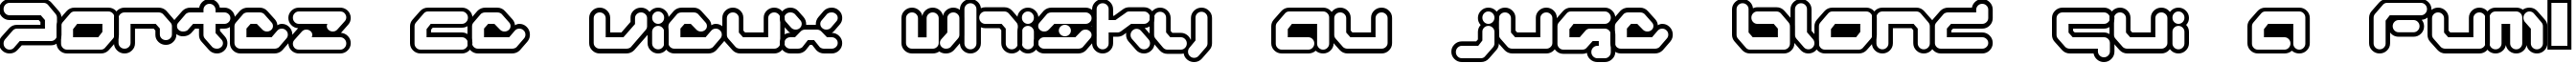 Пример написания шрифтом Gameboy Gamegirl текста на французском